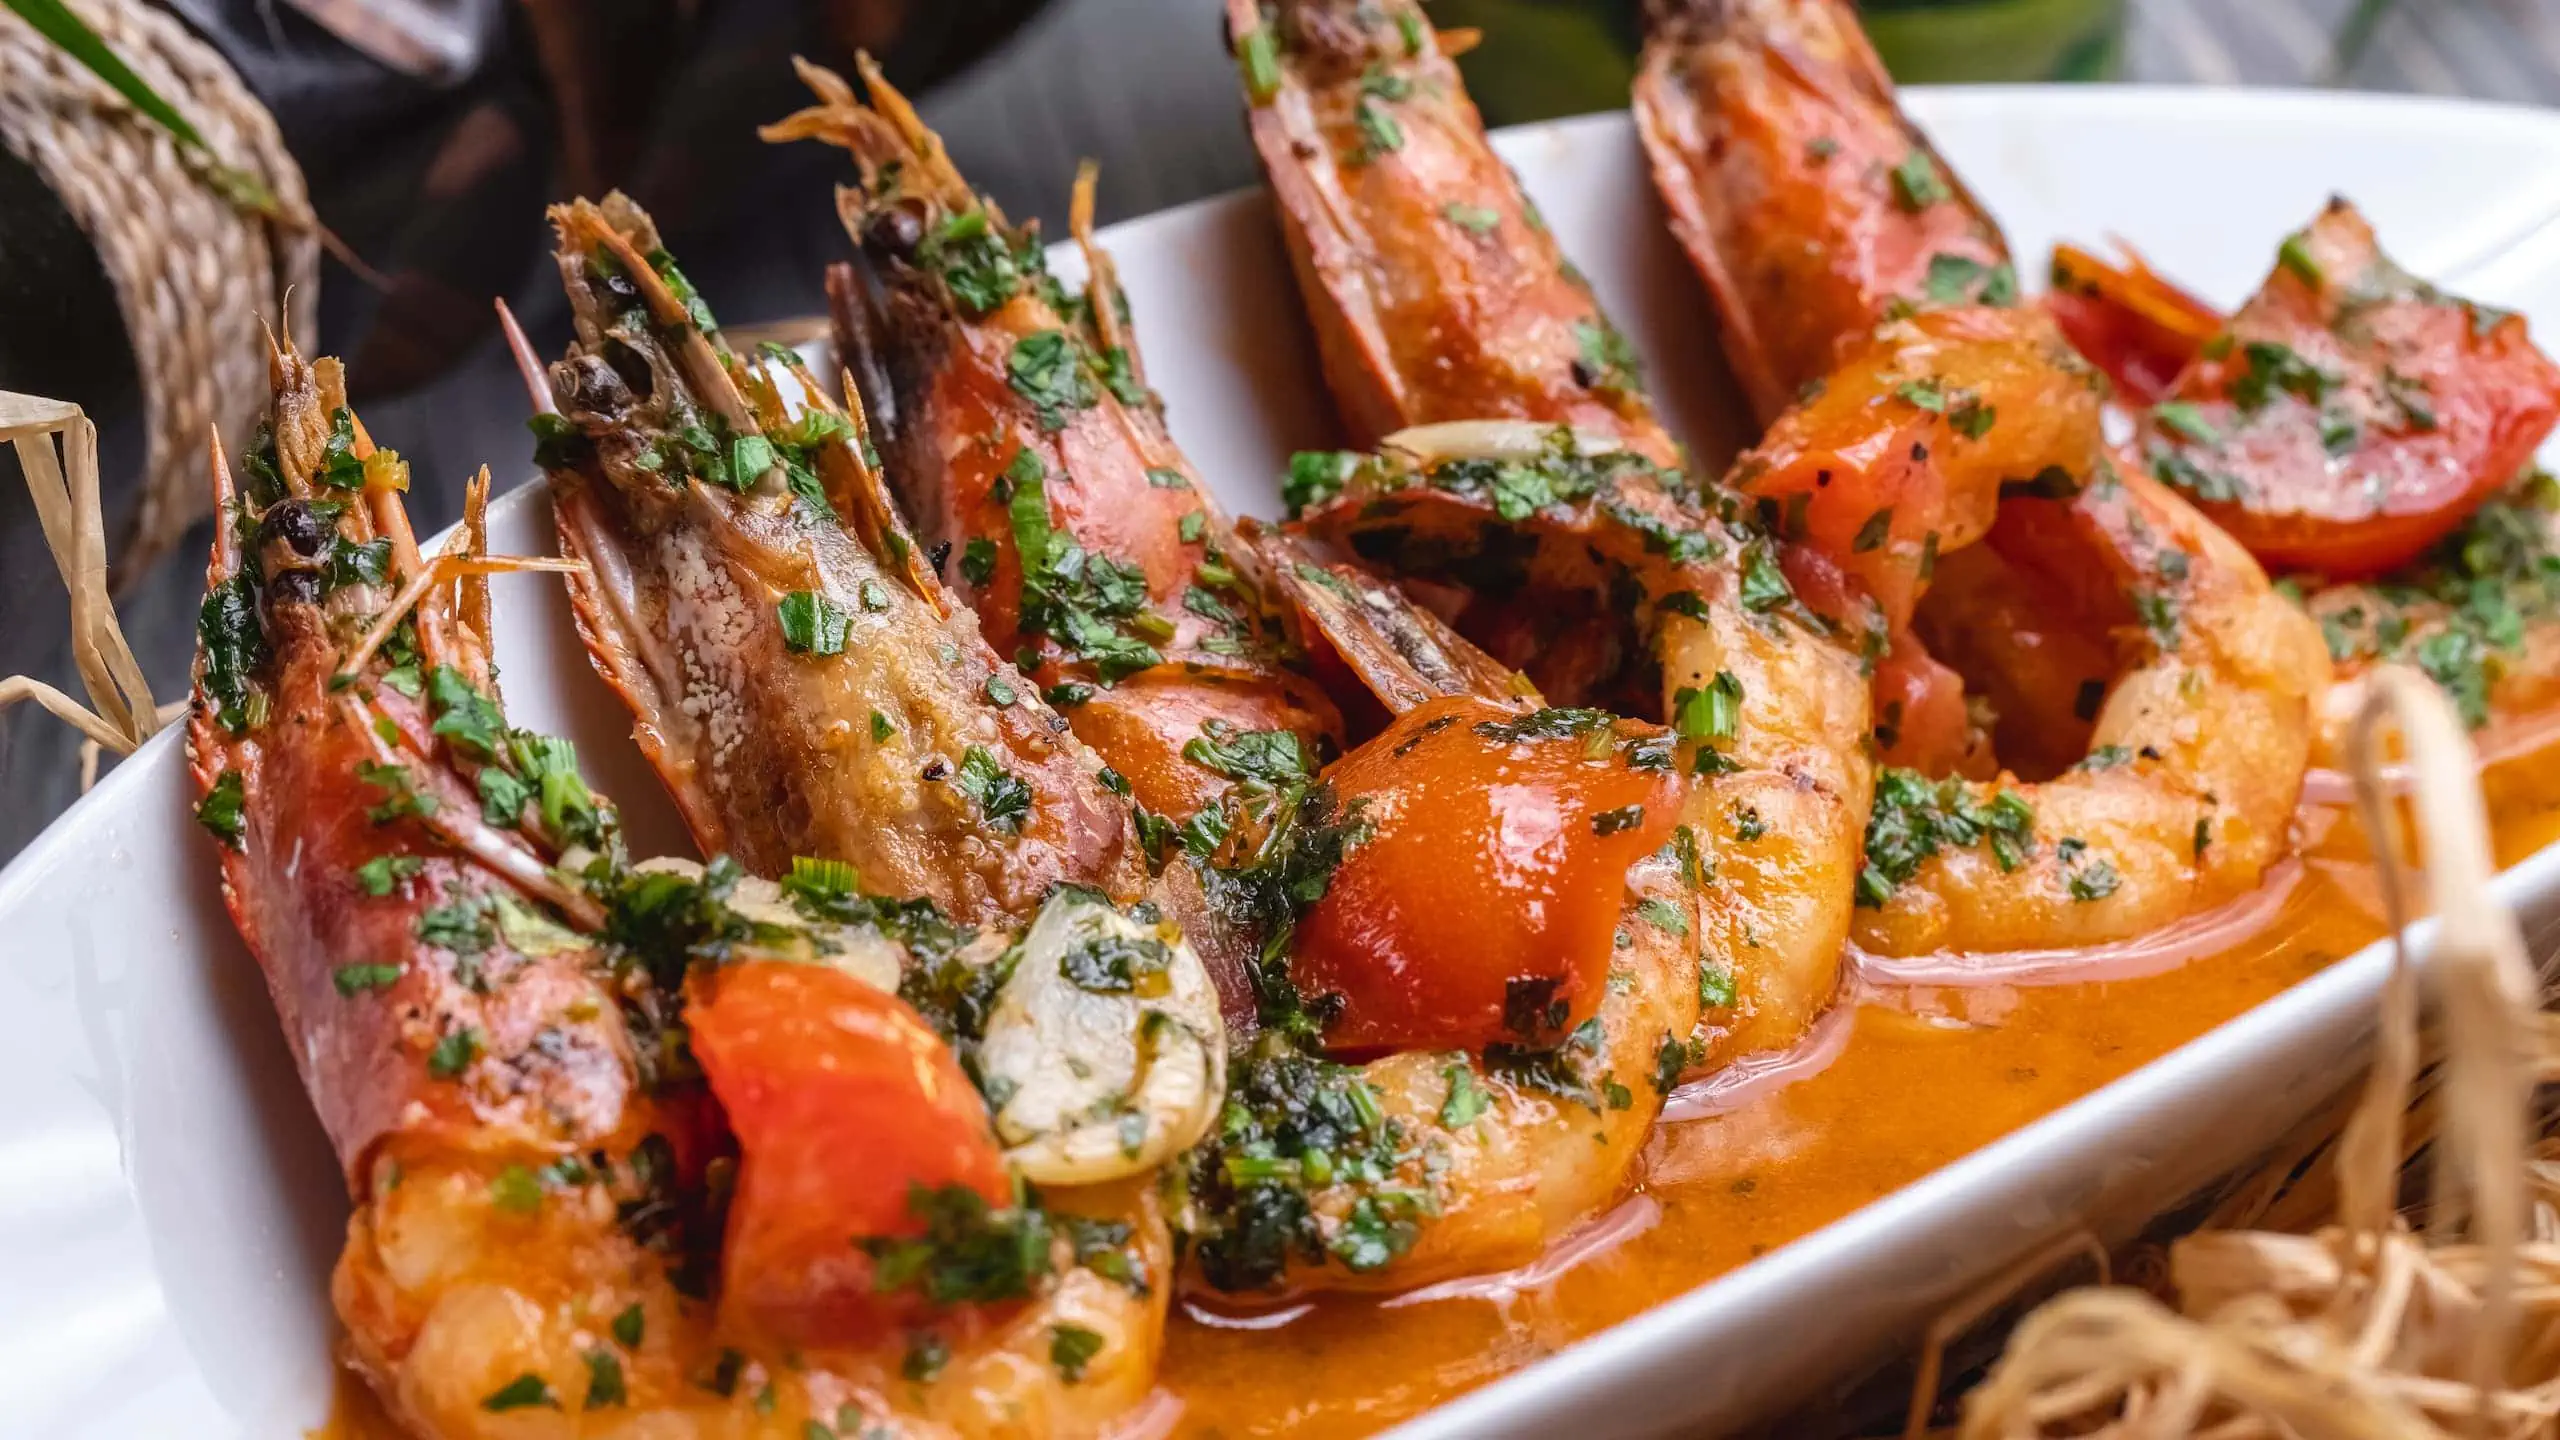 Our colossal shrimp recipe